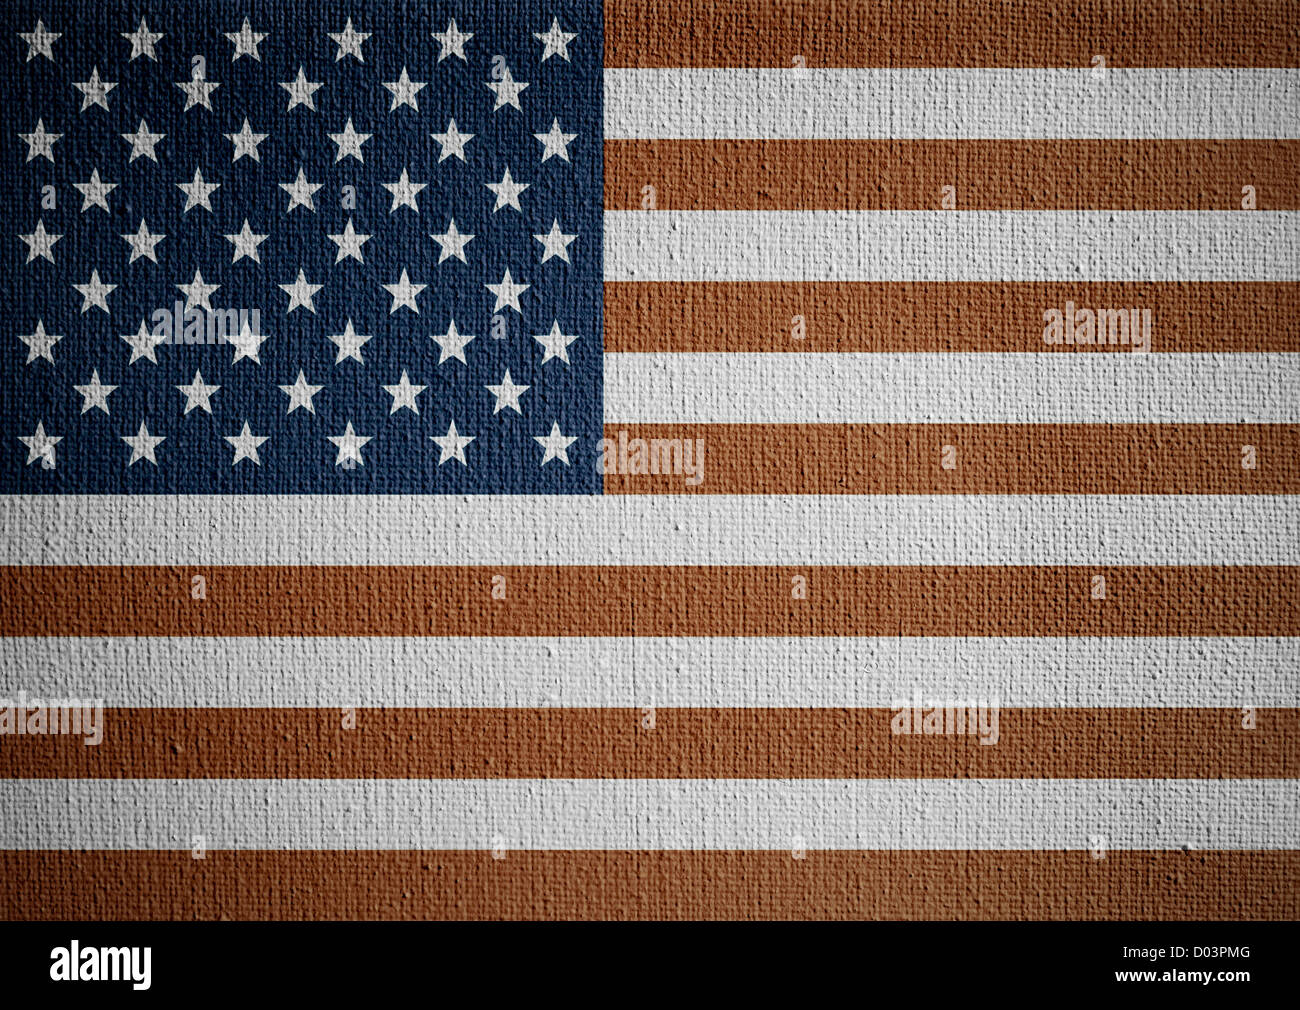 USA flag on white canvas Stock Photo